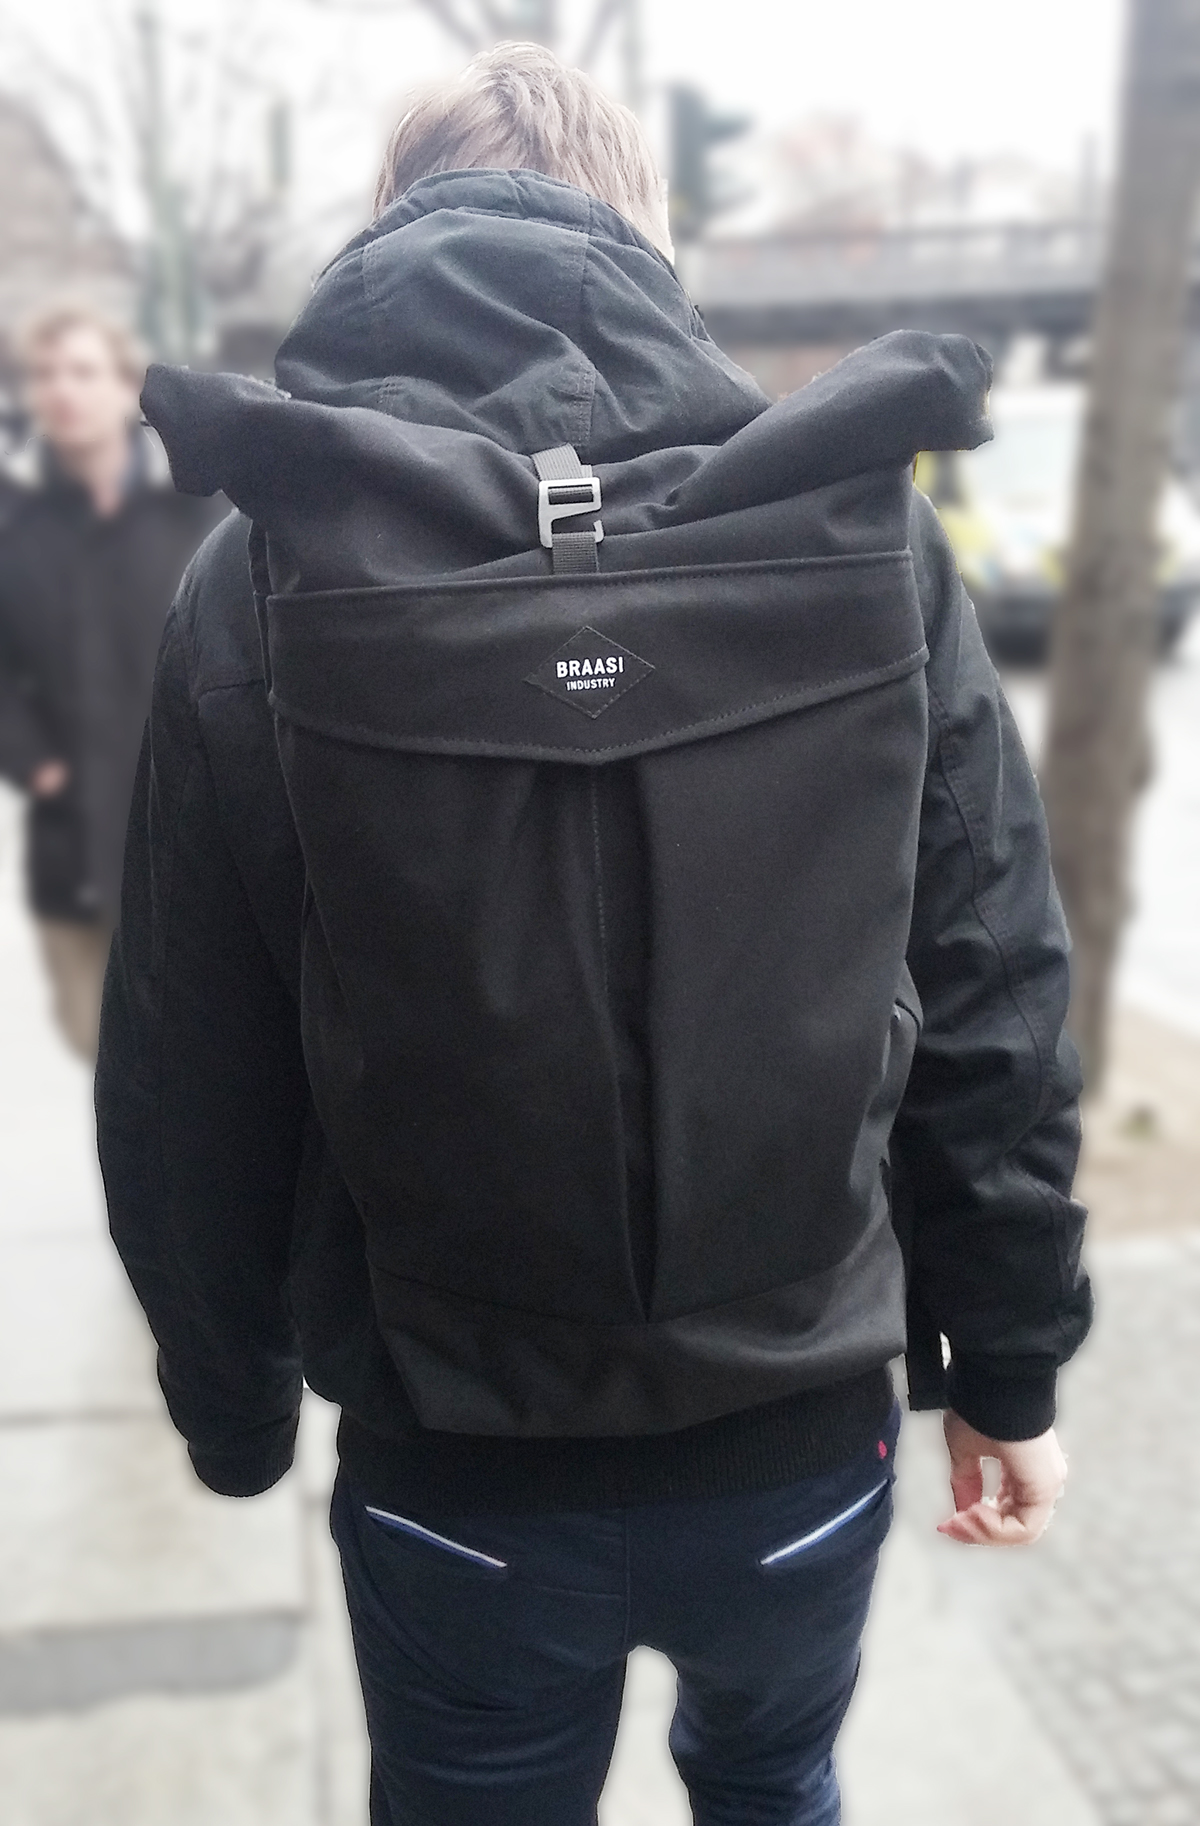 rolltop cotton backpack daypack bag braasi Rucksack waterproof Gear Carry